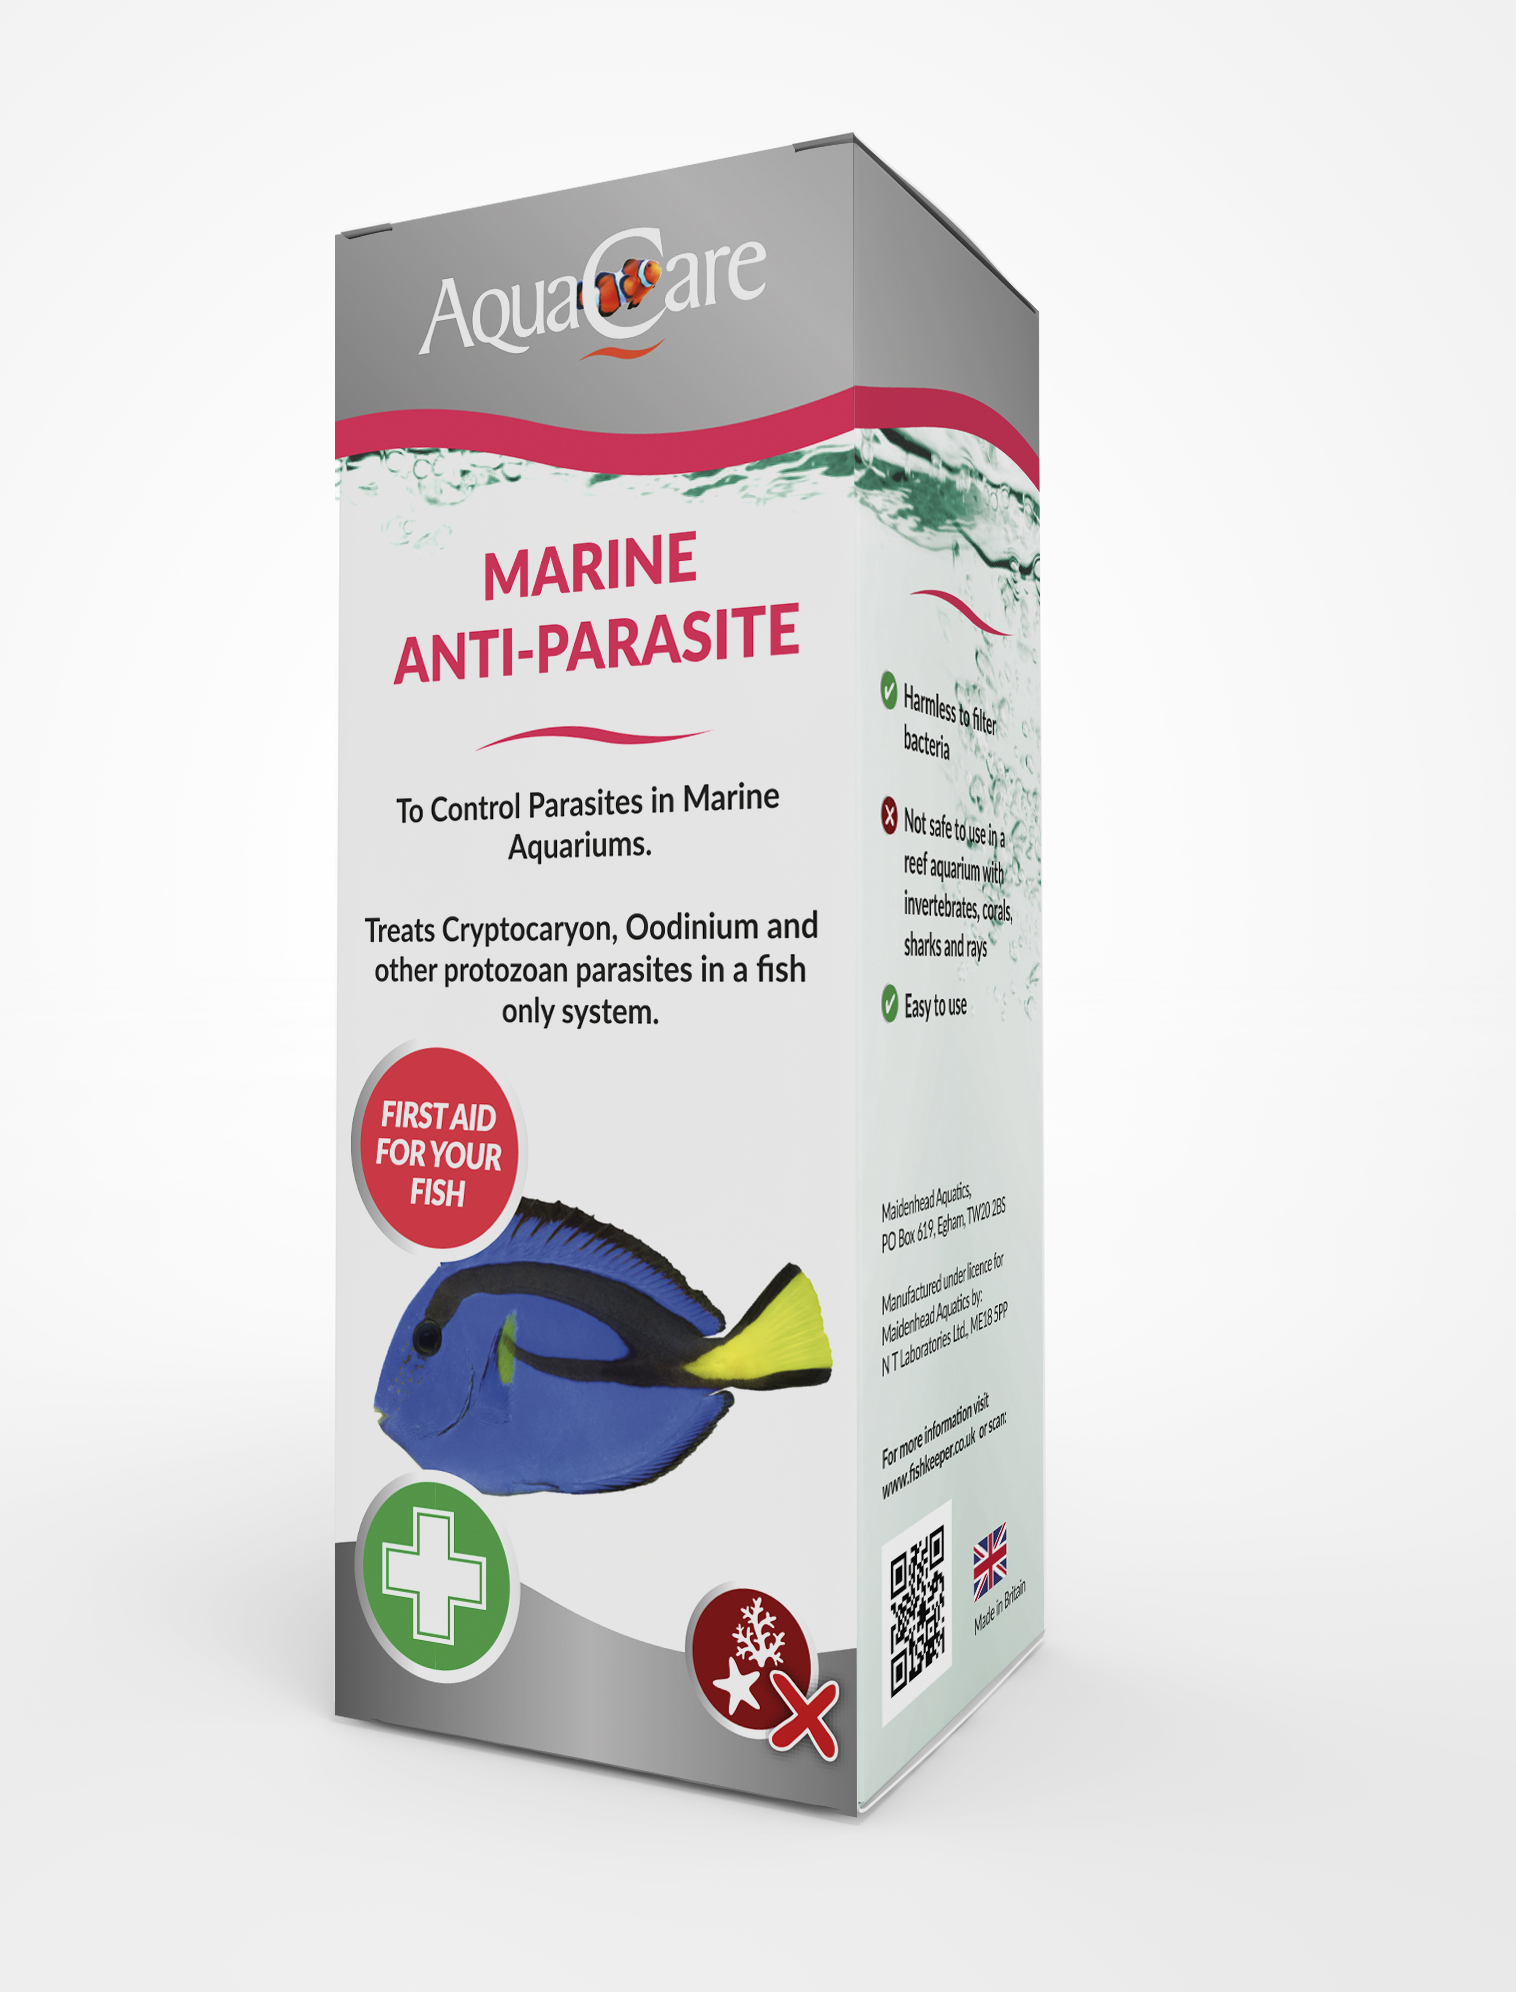 aquacare-marine-anti-parasite-1479811199.jpg